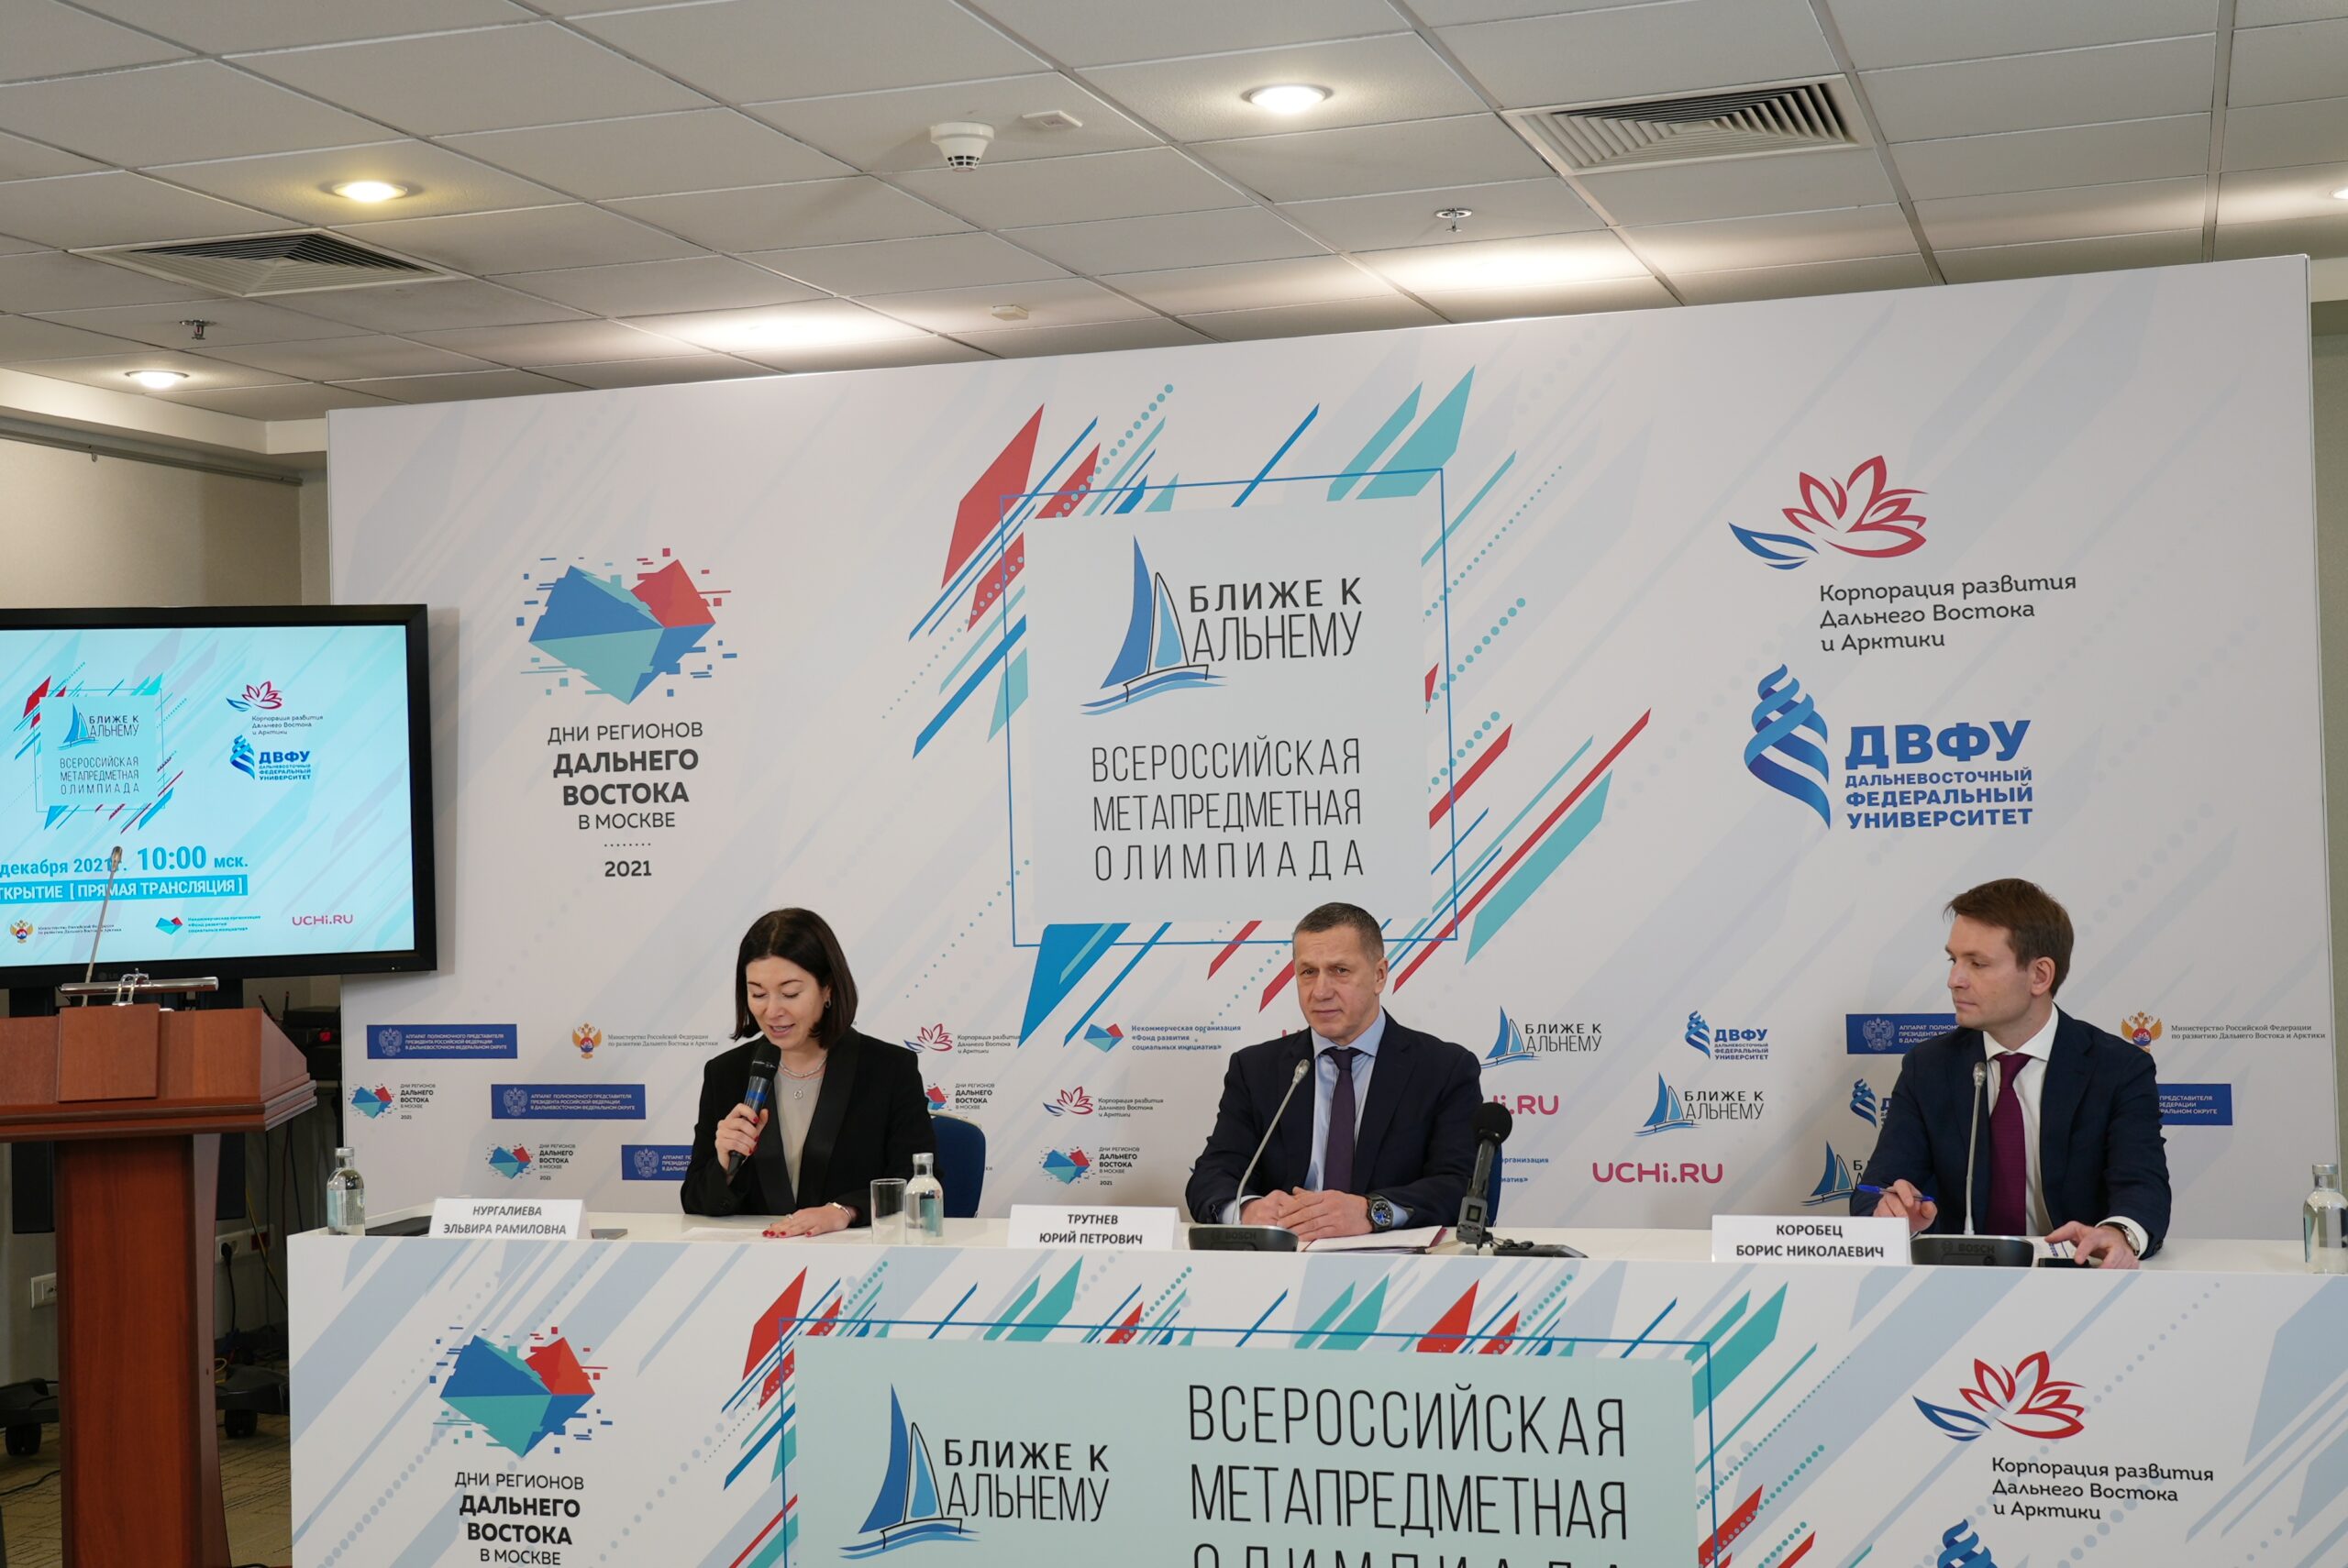 Олимпиада «Ближе к Дальнему» стартовала в рамках Дней регионов Дальнего Востока в Москве